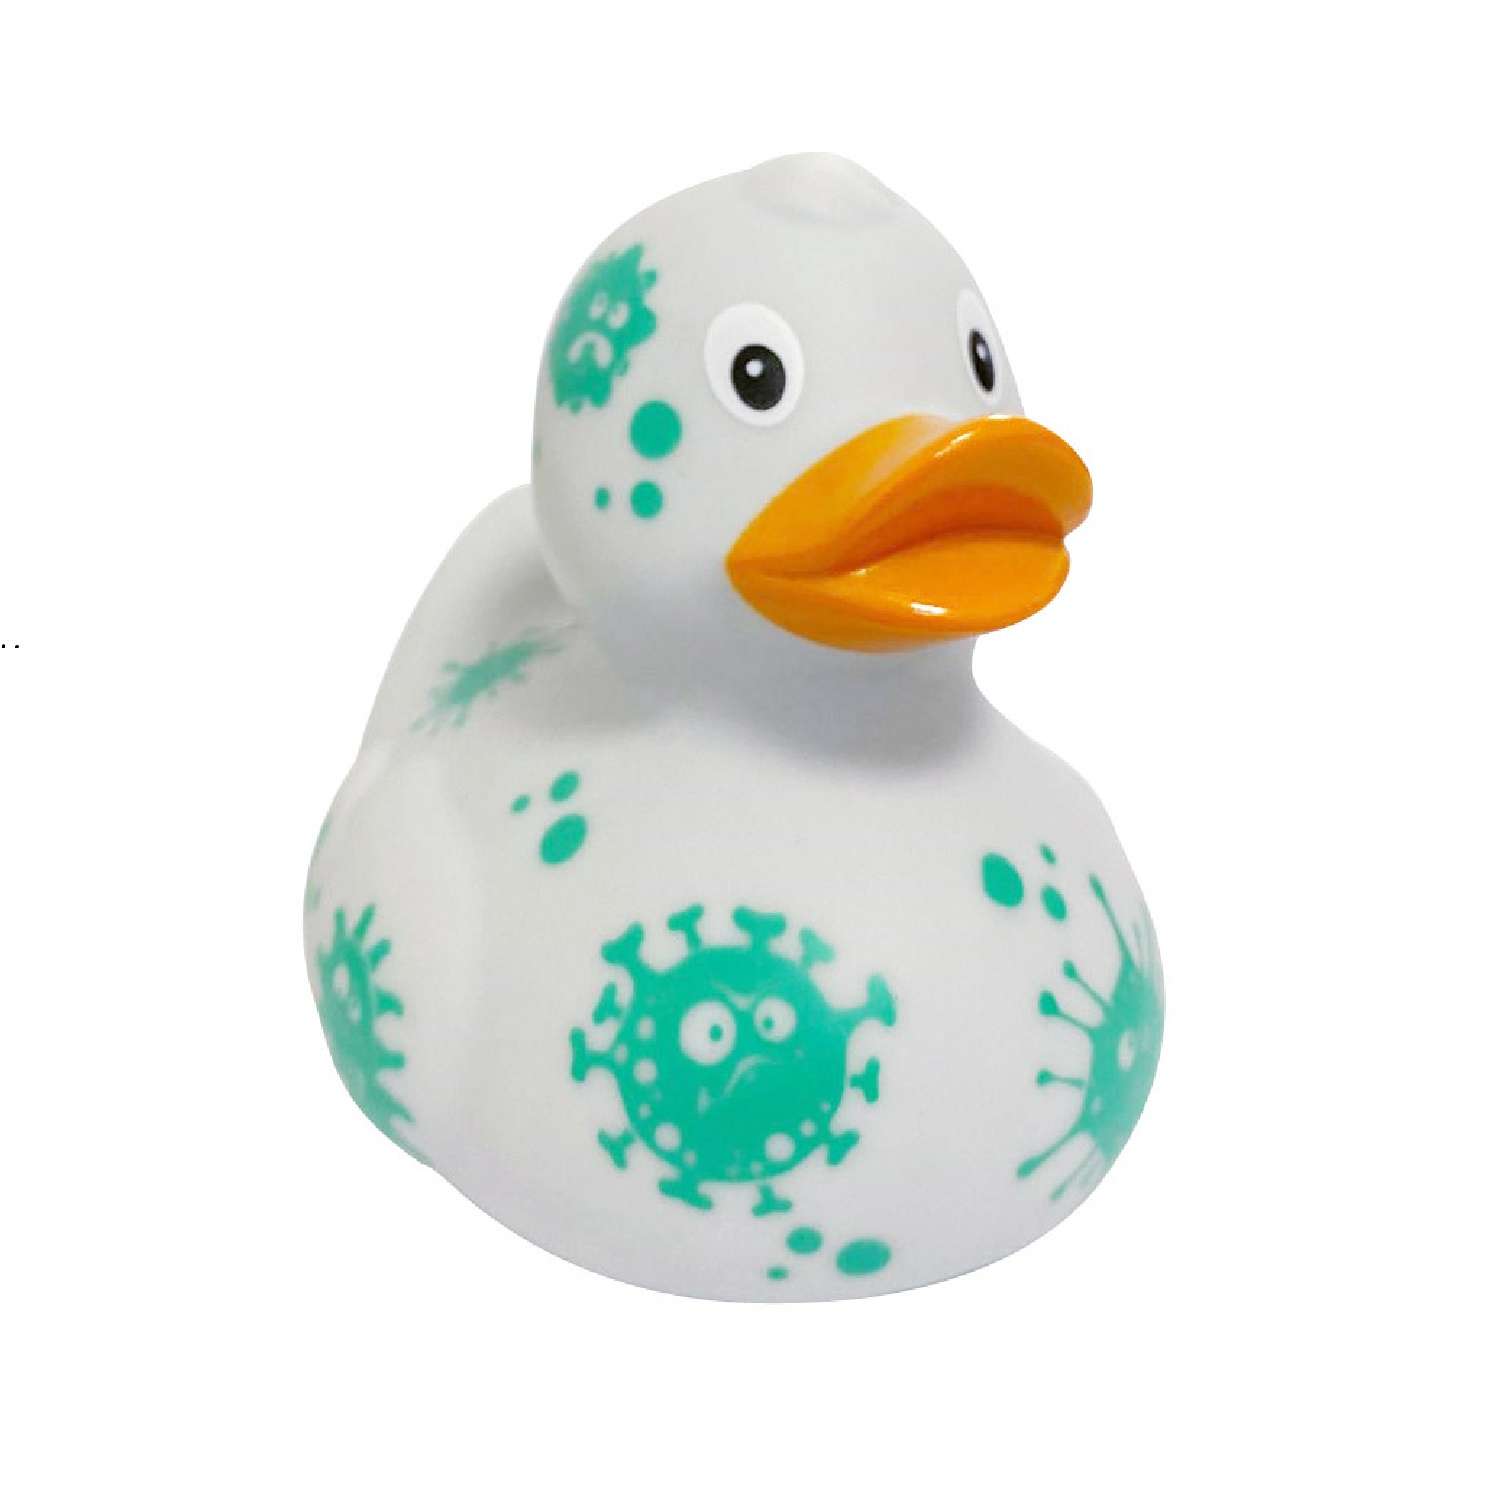 Игрушка Funny ducks для ванной Вирус уточка 1308 - фото 2